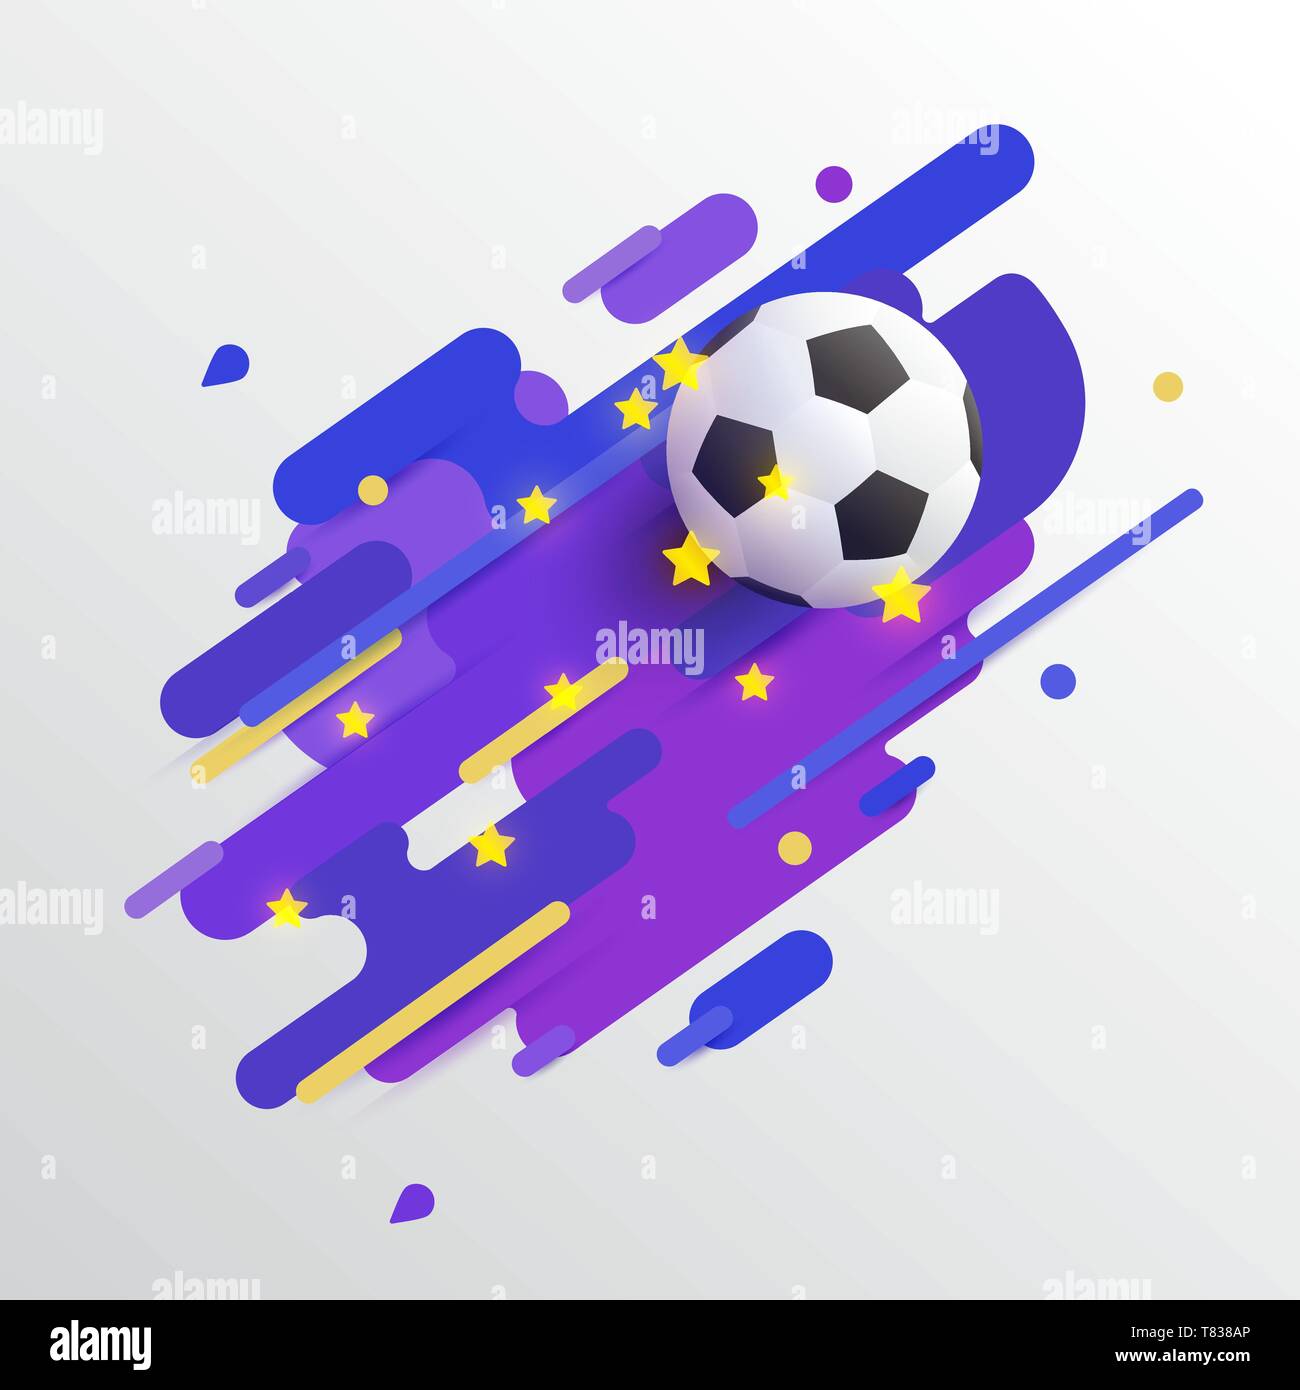 Realistische Fußball, Fußball, auf color bars mit hellen Sternen. Vector Illustration Symbol oder Banner Design für die Fußball-Weltmeisterschaft, Spiele, tournamen Stock Vektor